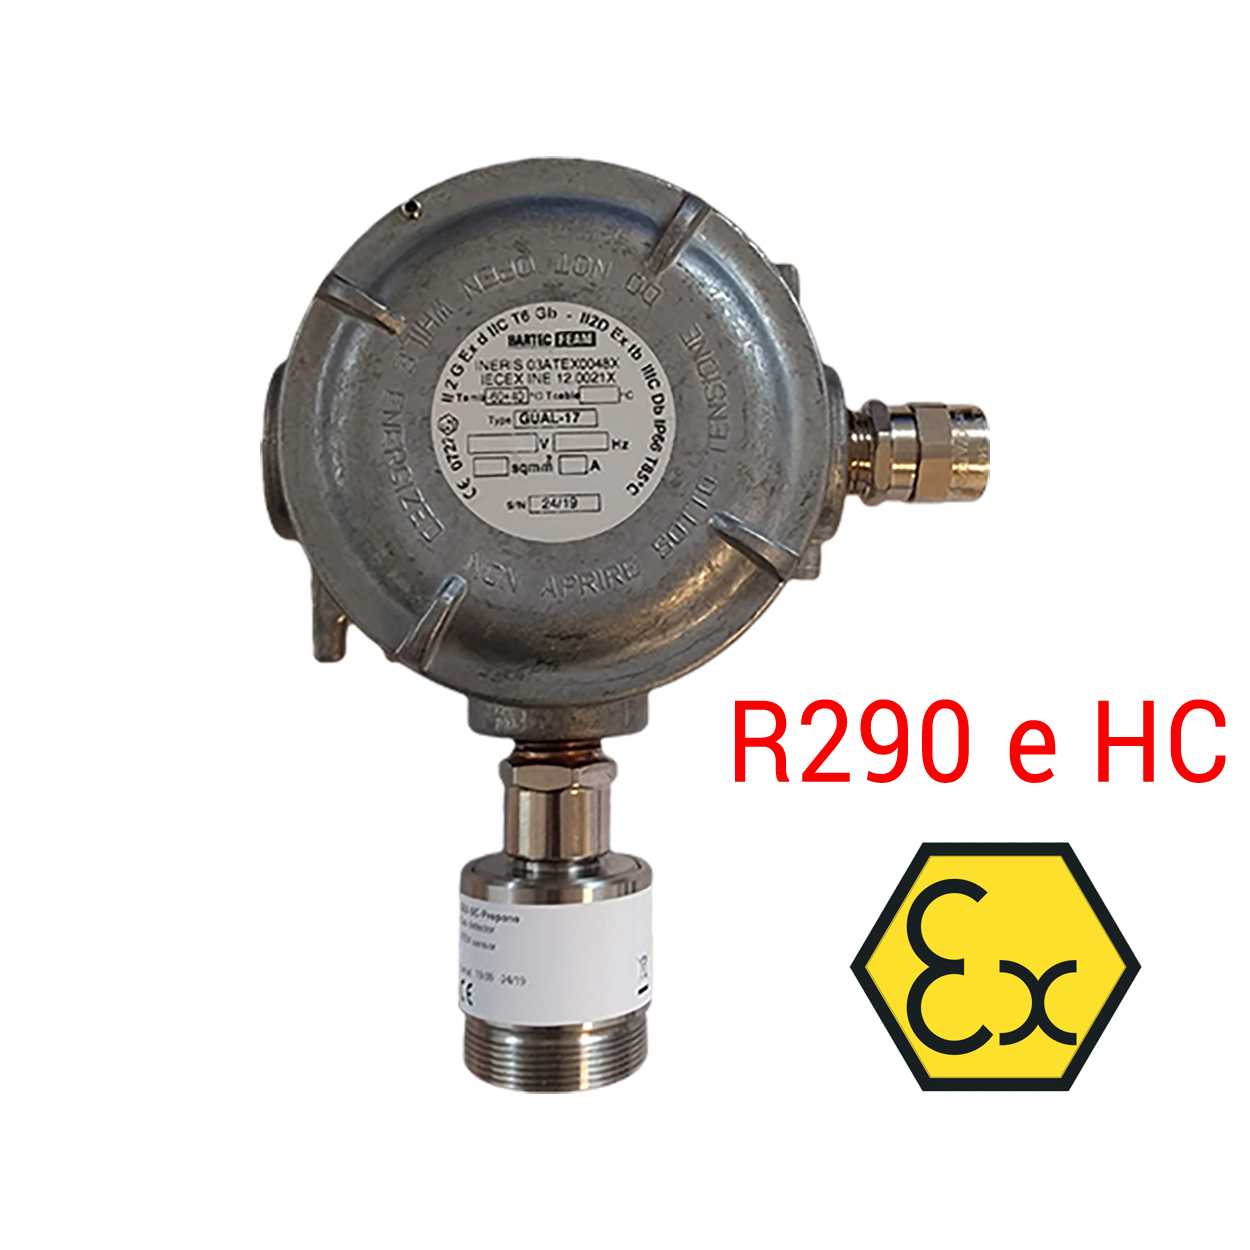 SAMON GEX (R290 e HC) – Rilevatore per R290 e idrocarburi, per collegamento a centrale MPU - sensore a semiconduttore (SC) - Foto 1 